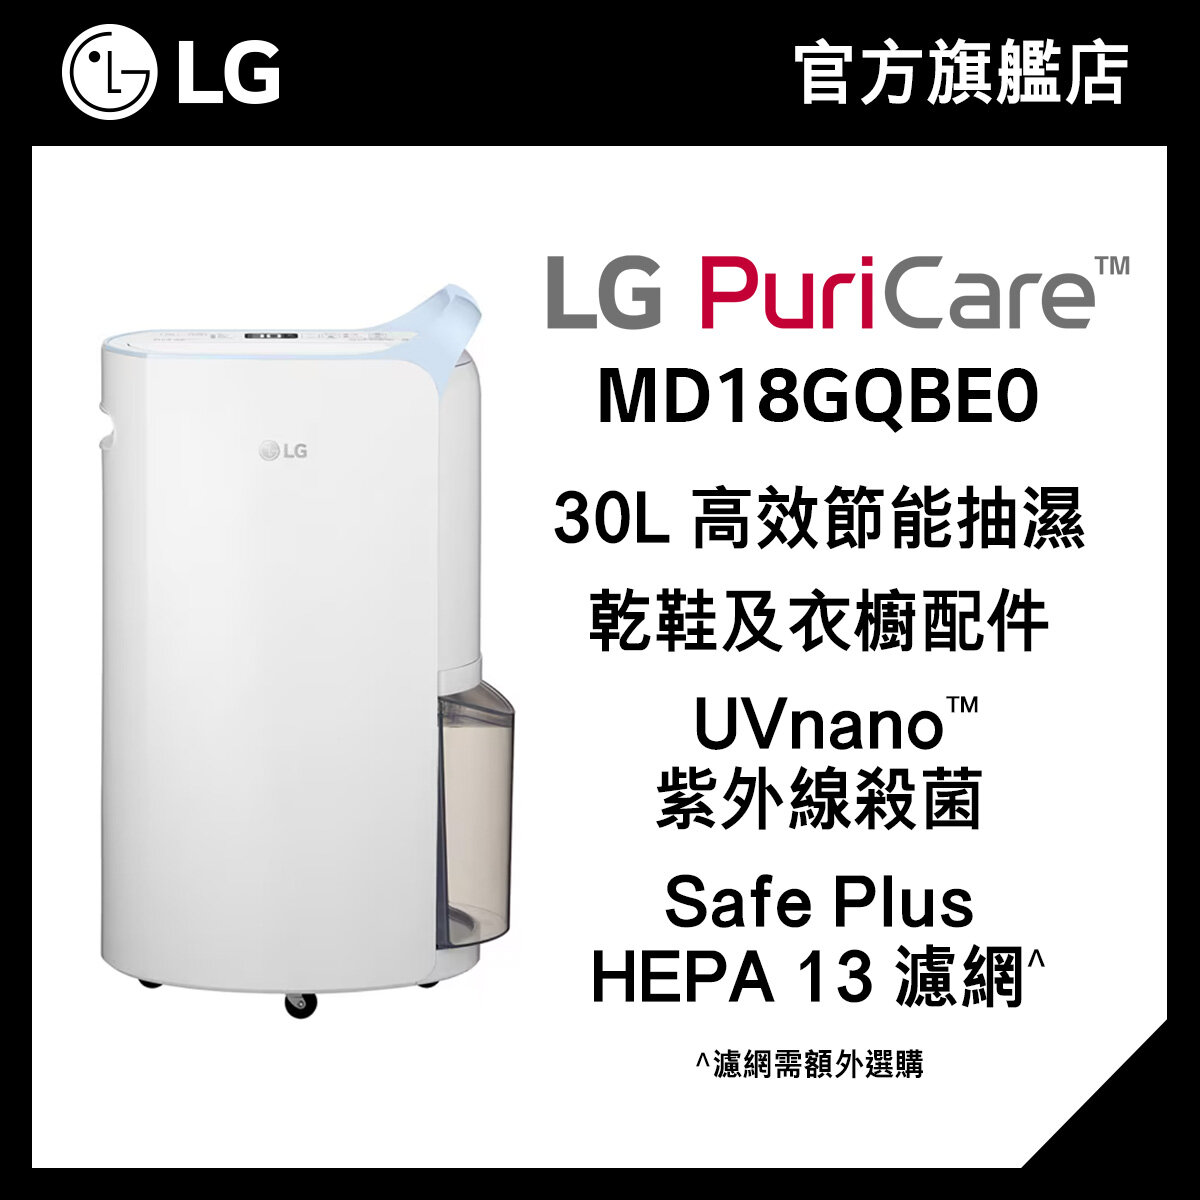 LG PuriCare™ 30L 變頻式離子殺菌智能抽濕機 MD18GQBE0 (Uvnano殺菌, HEPA 13 濾網)